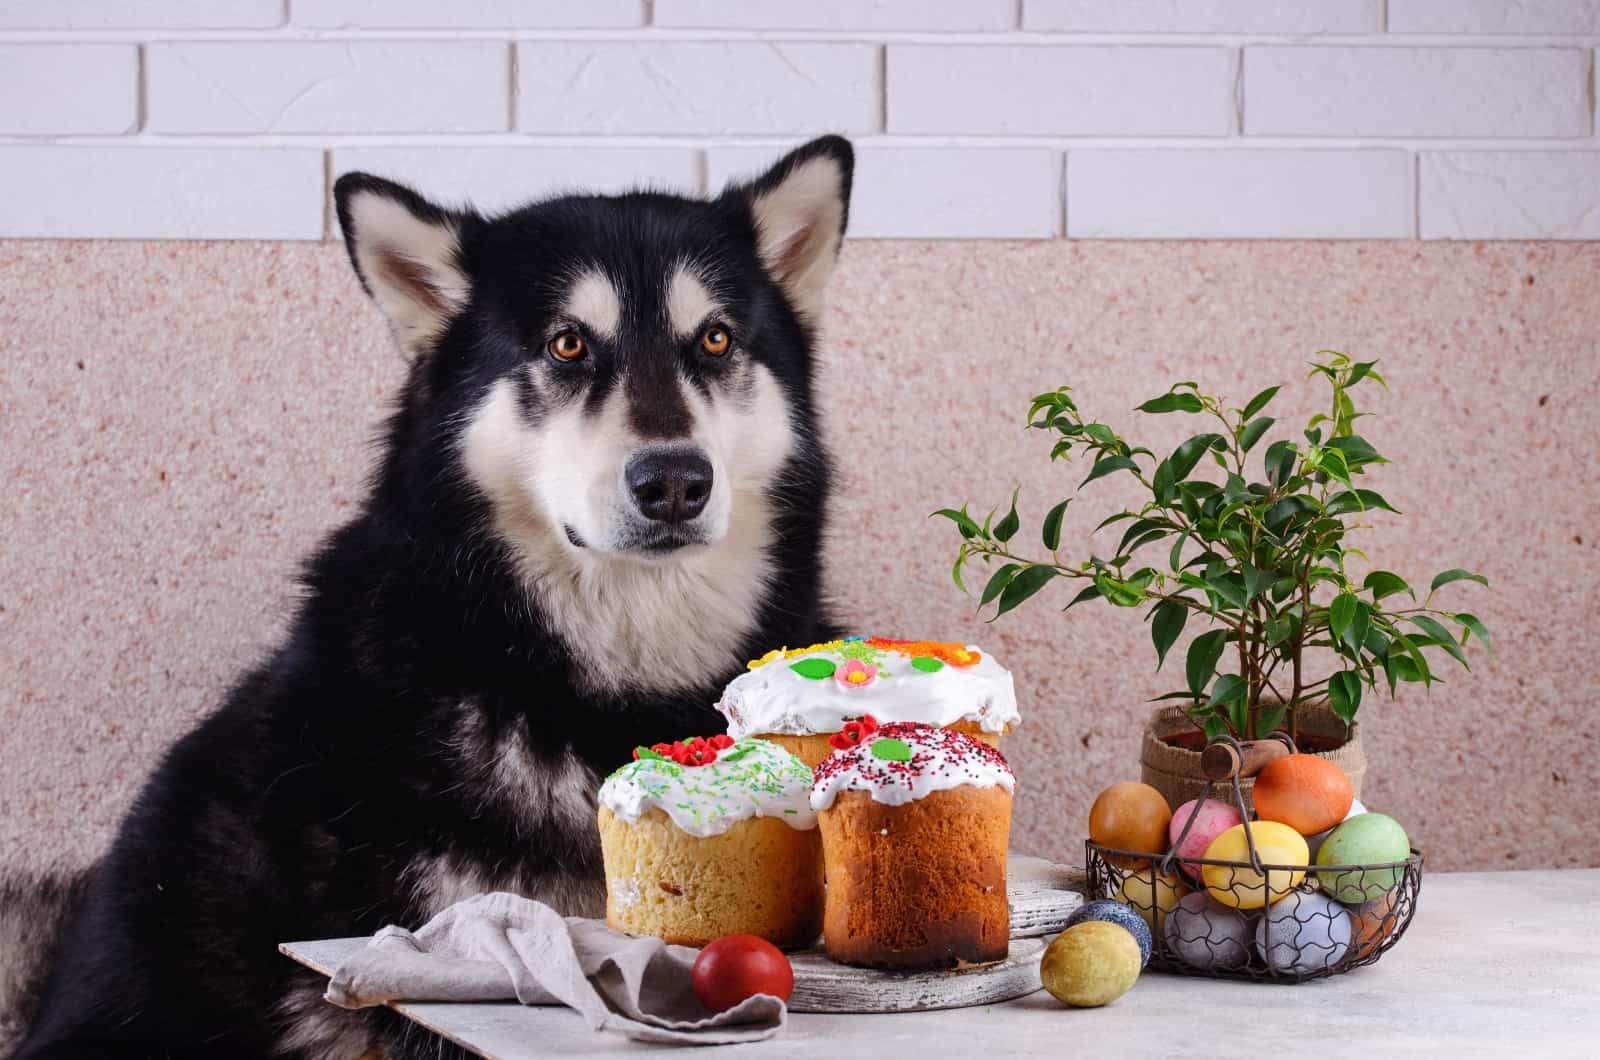 Alaskan Malamute sitting by cake